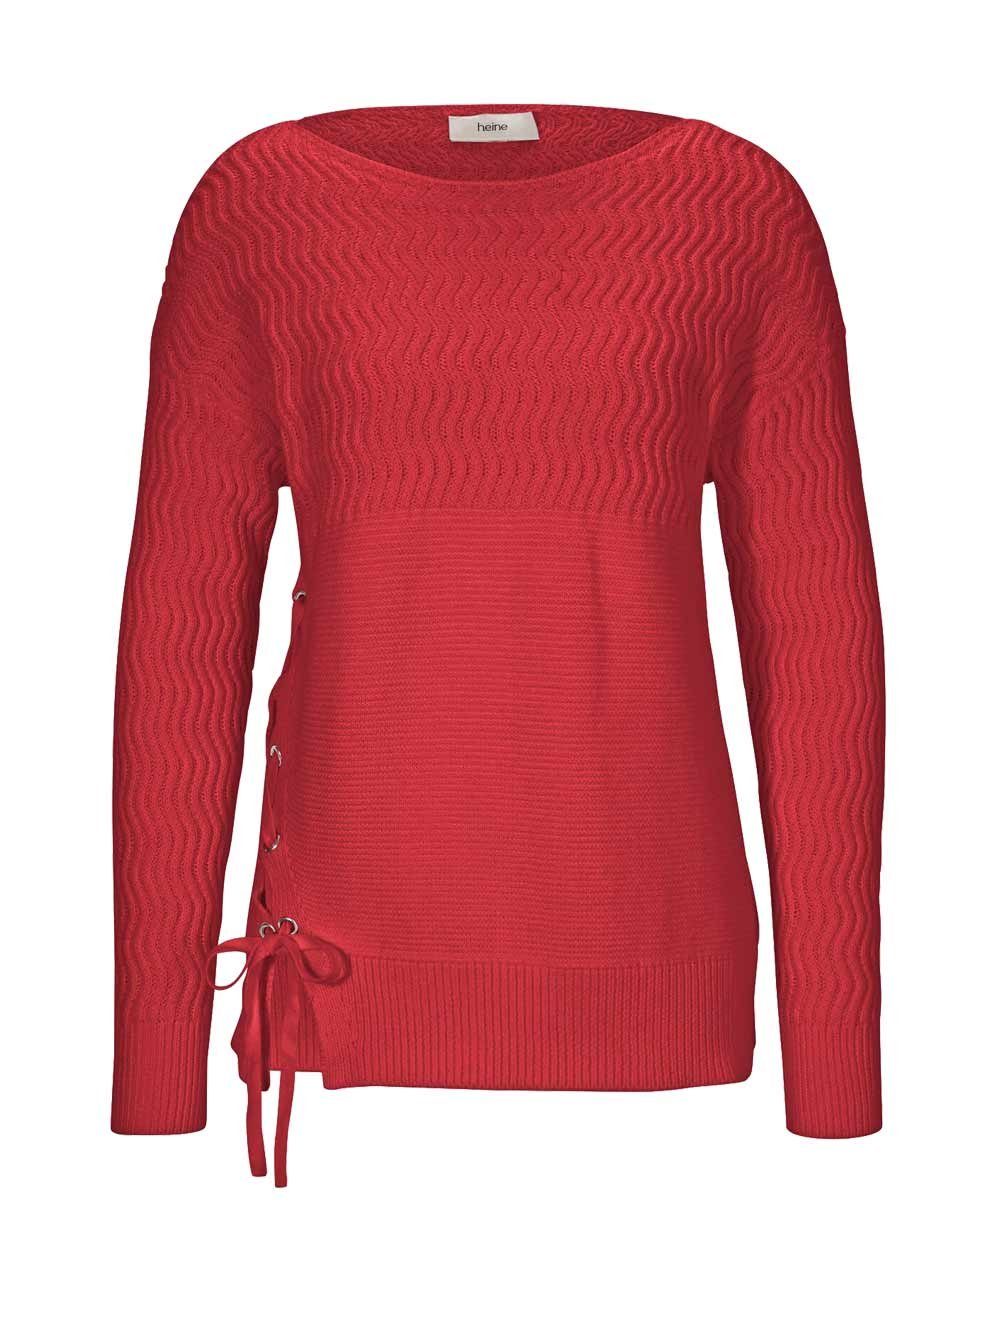 heine Wickelpullover HEINE Damen Pullover mit Zierschnürung, rot